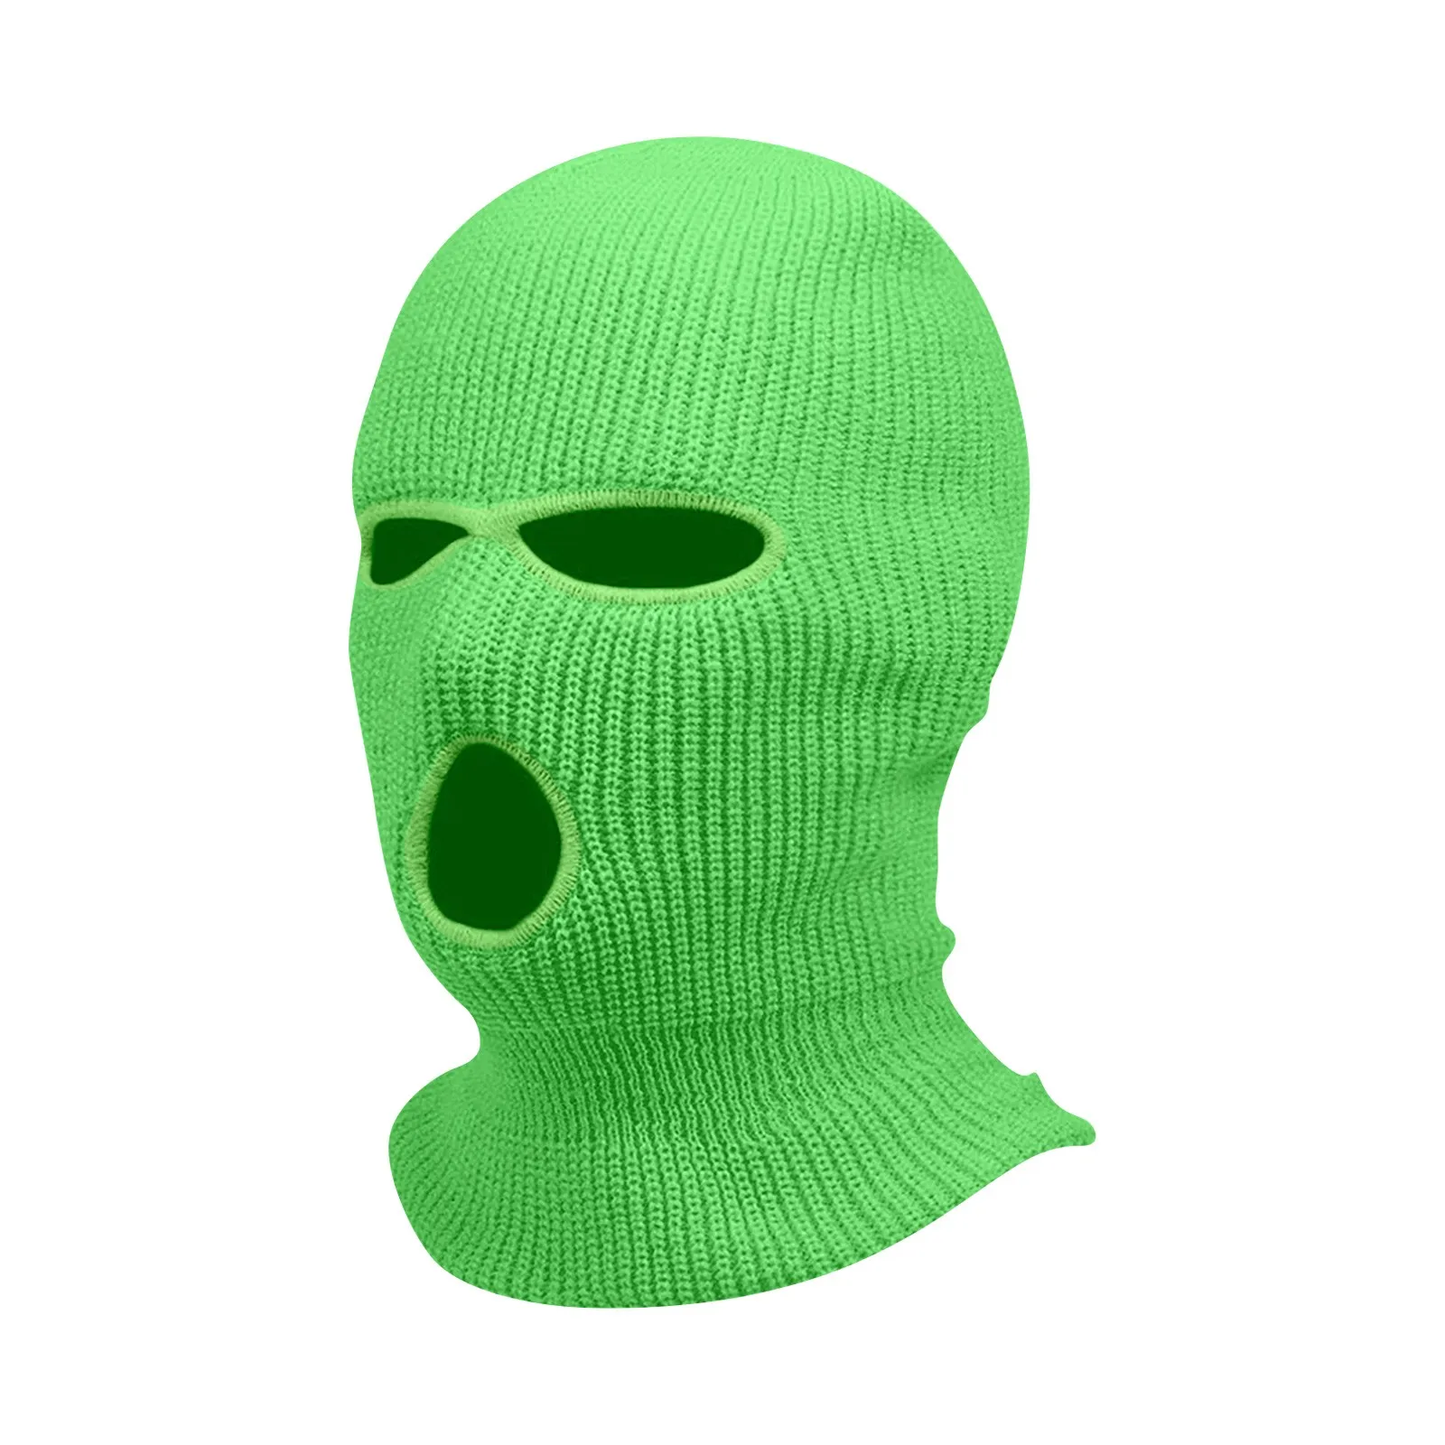 Hyper Green Skimask Balaclava